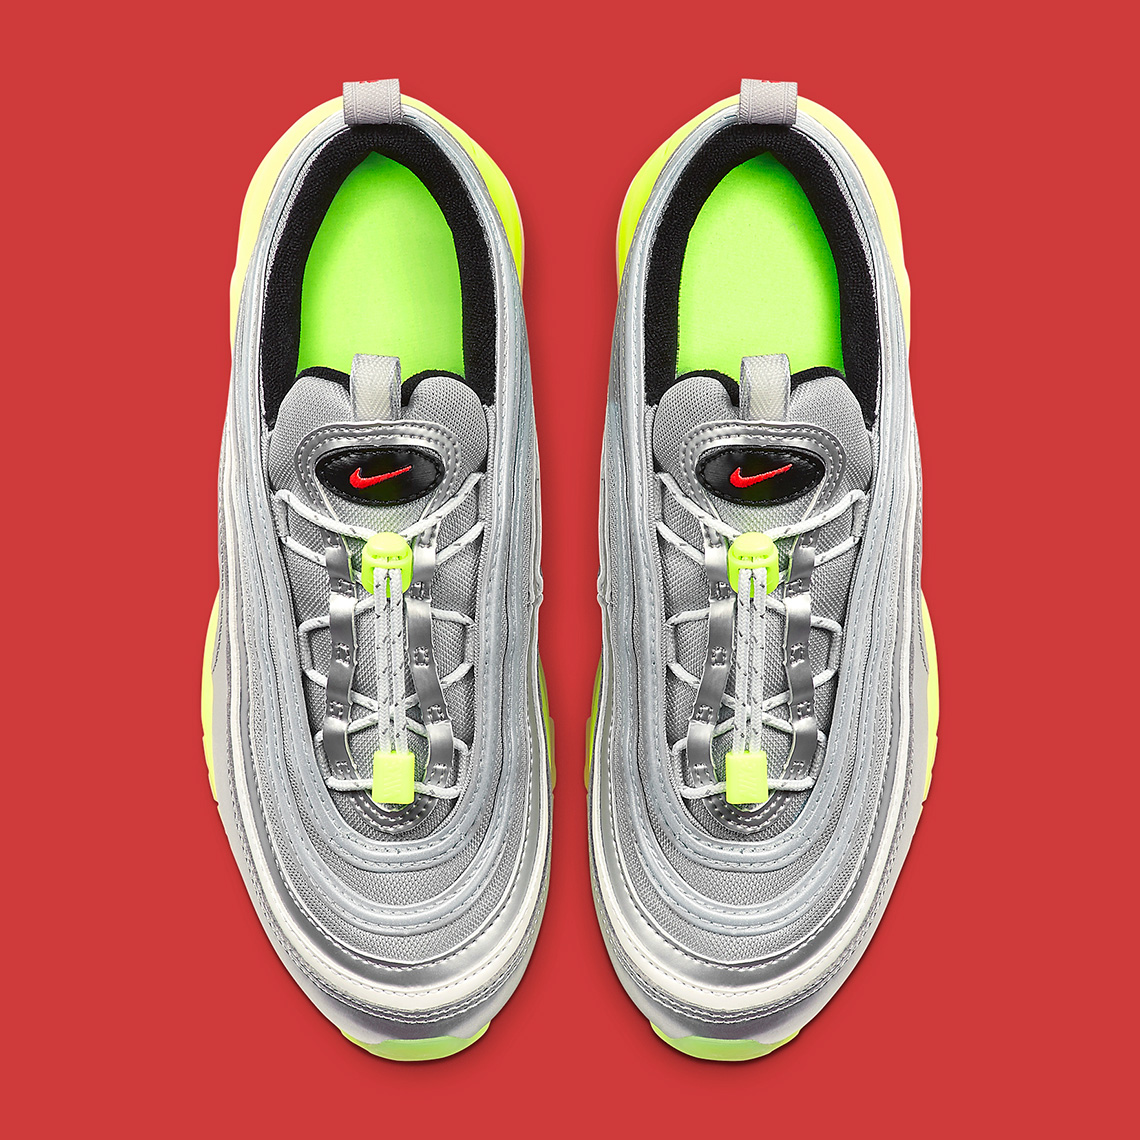 Nike Air Max 97 Bq8437 002 Release Info 4